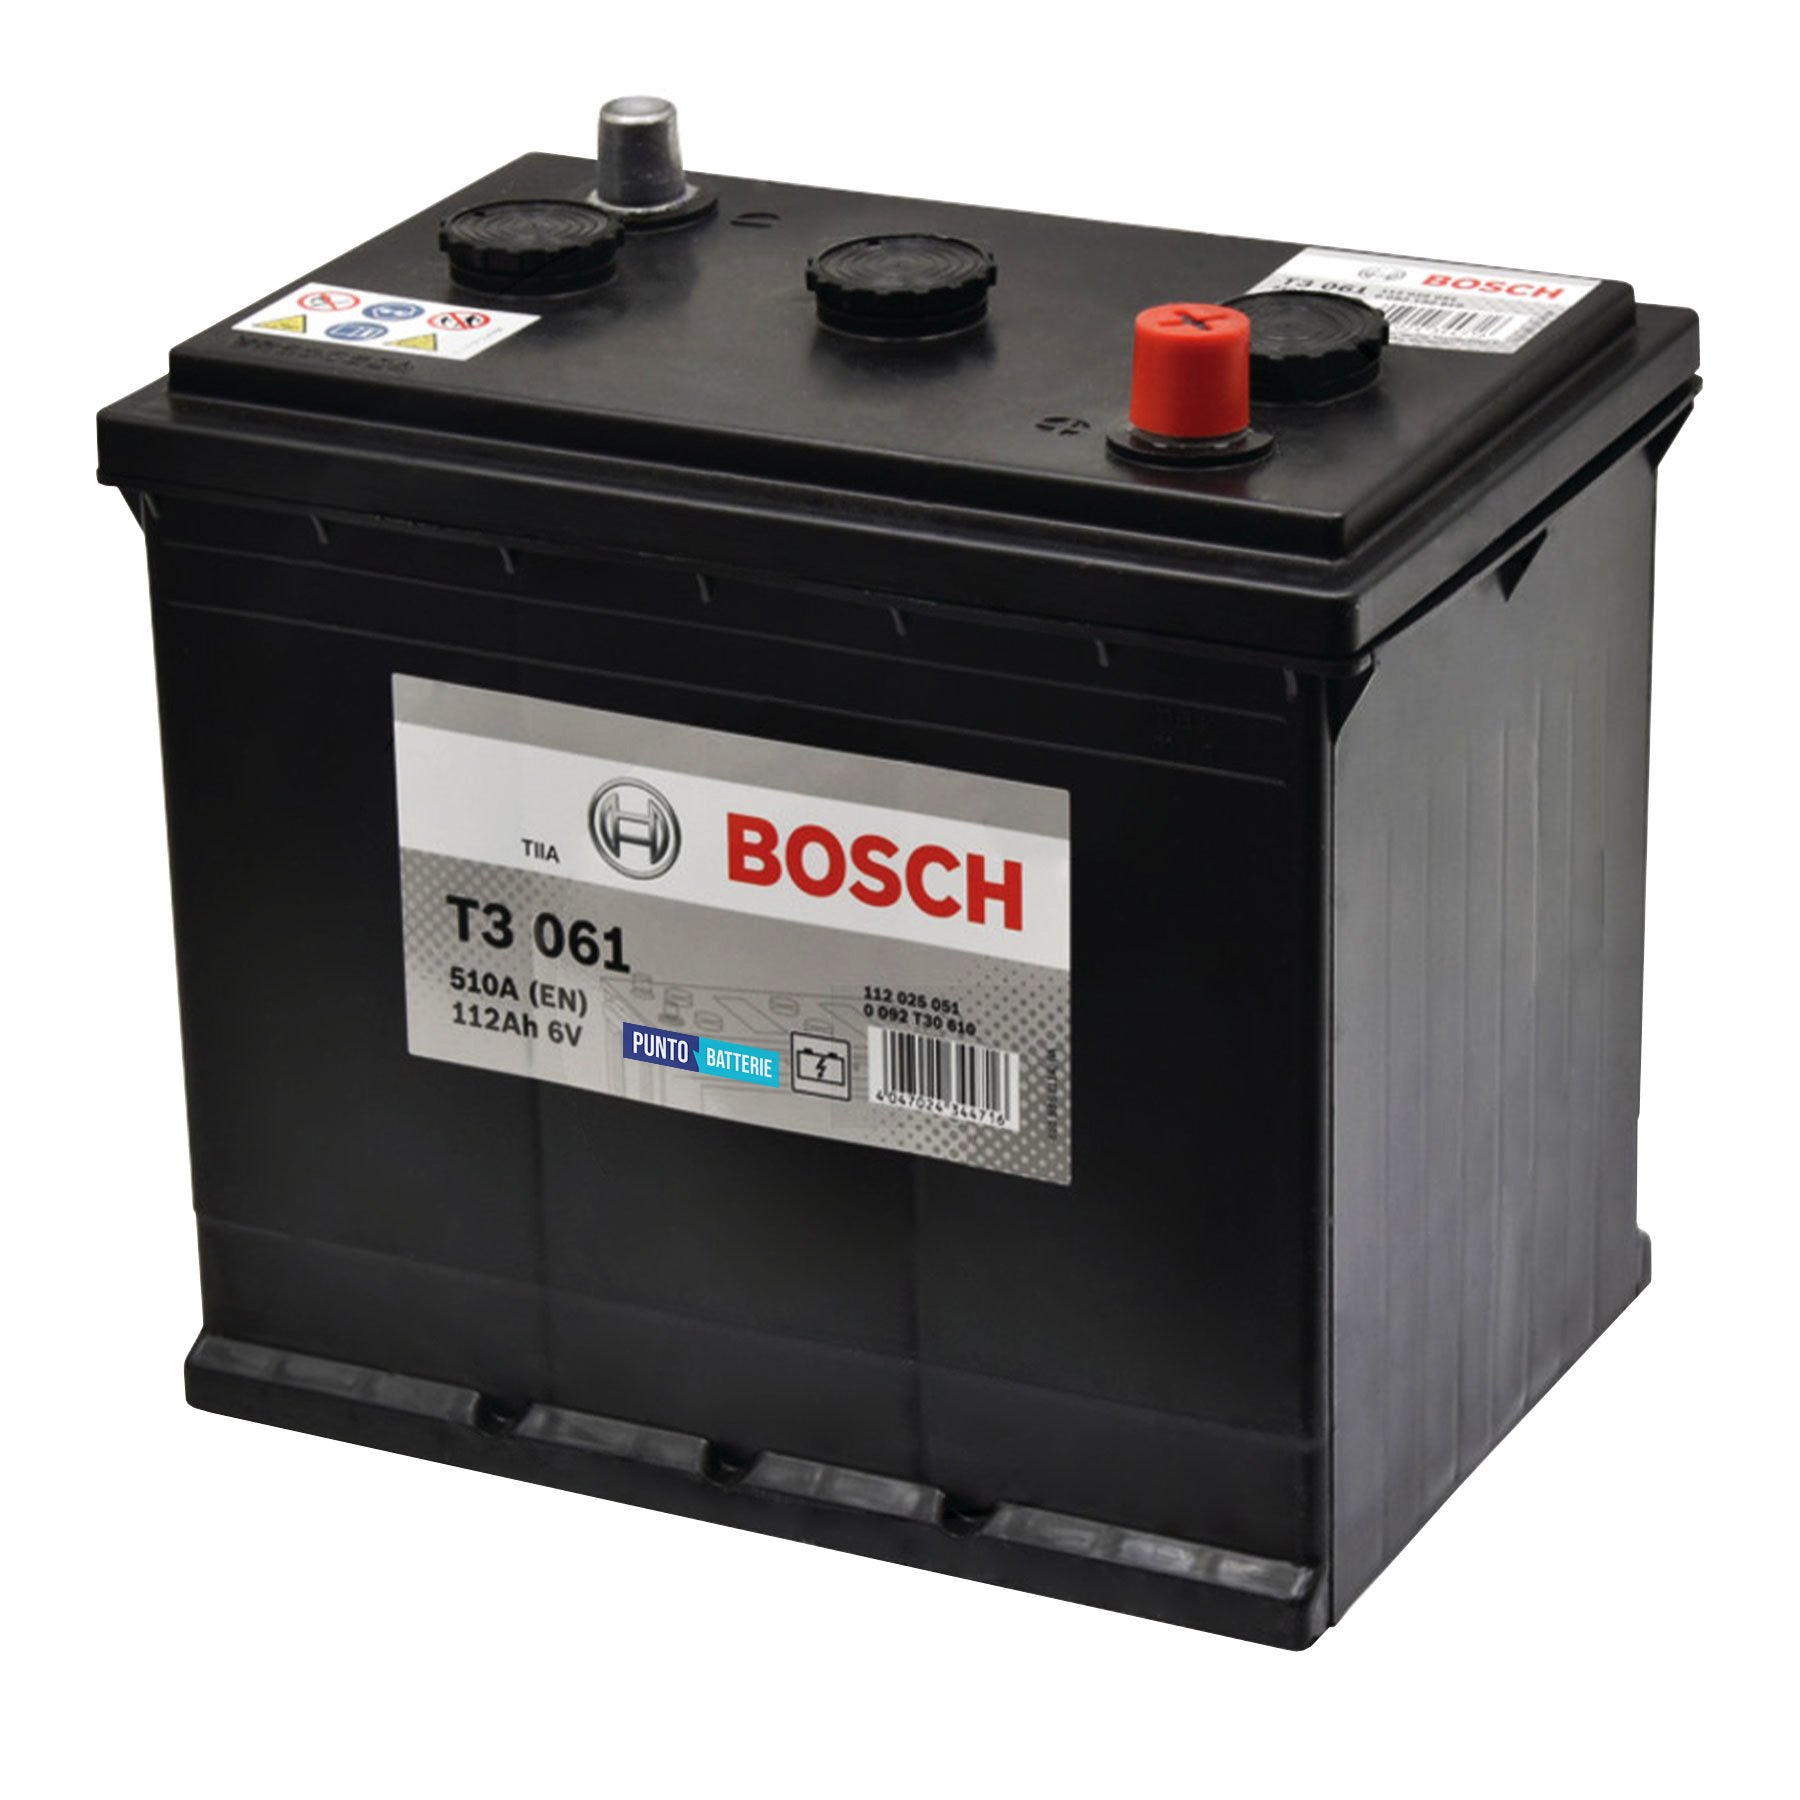 Batteria originale Bosch T3 T3061, dimensioni 260 x 175 x 238, polo positivo a destra, 6 volt, 112 amperora, 510 ampere. Batteria per camion e veicoli pesanti.